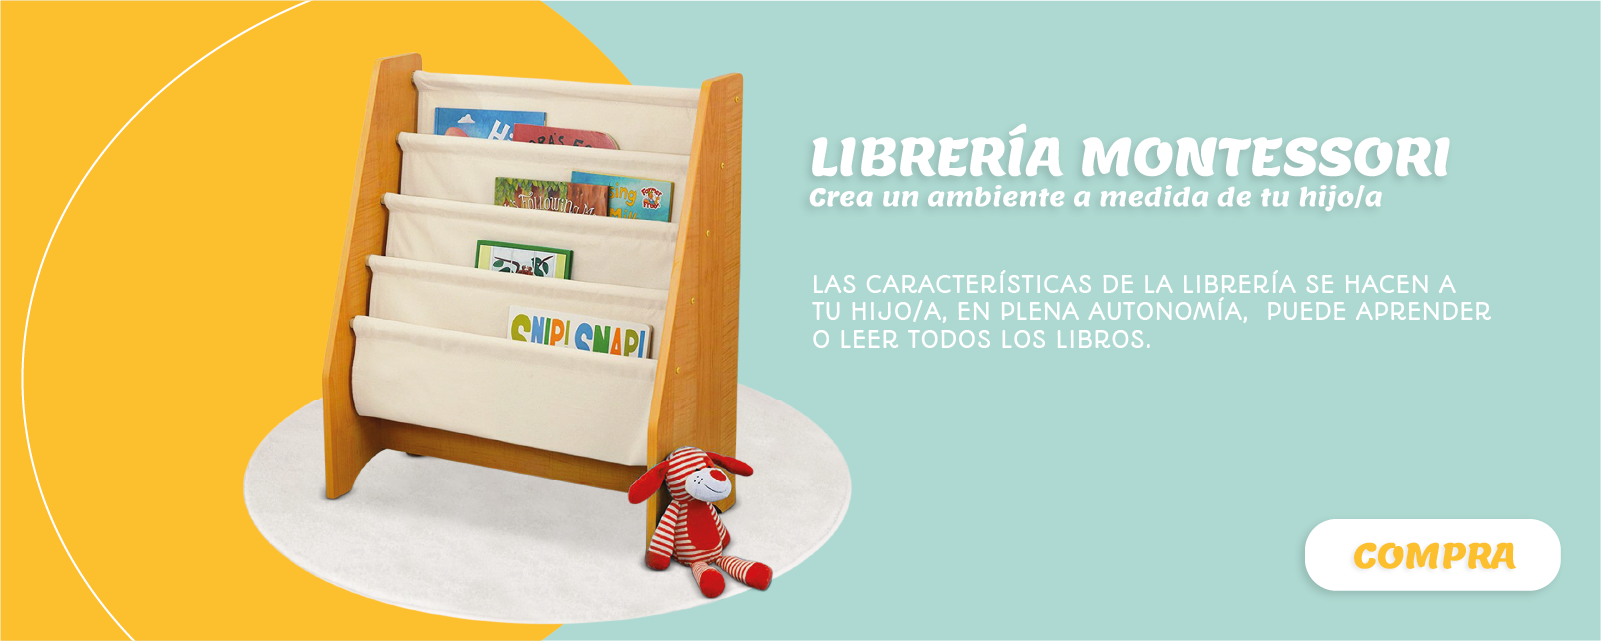 Libreria Montessori